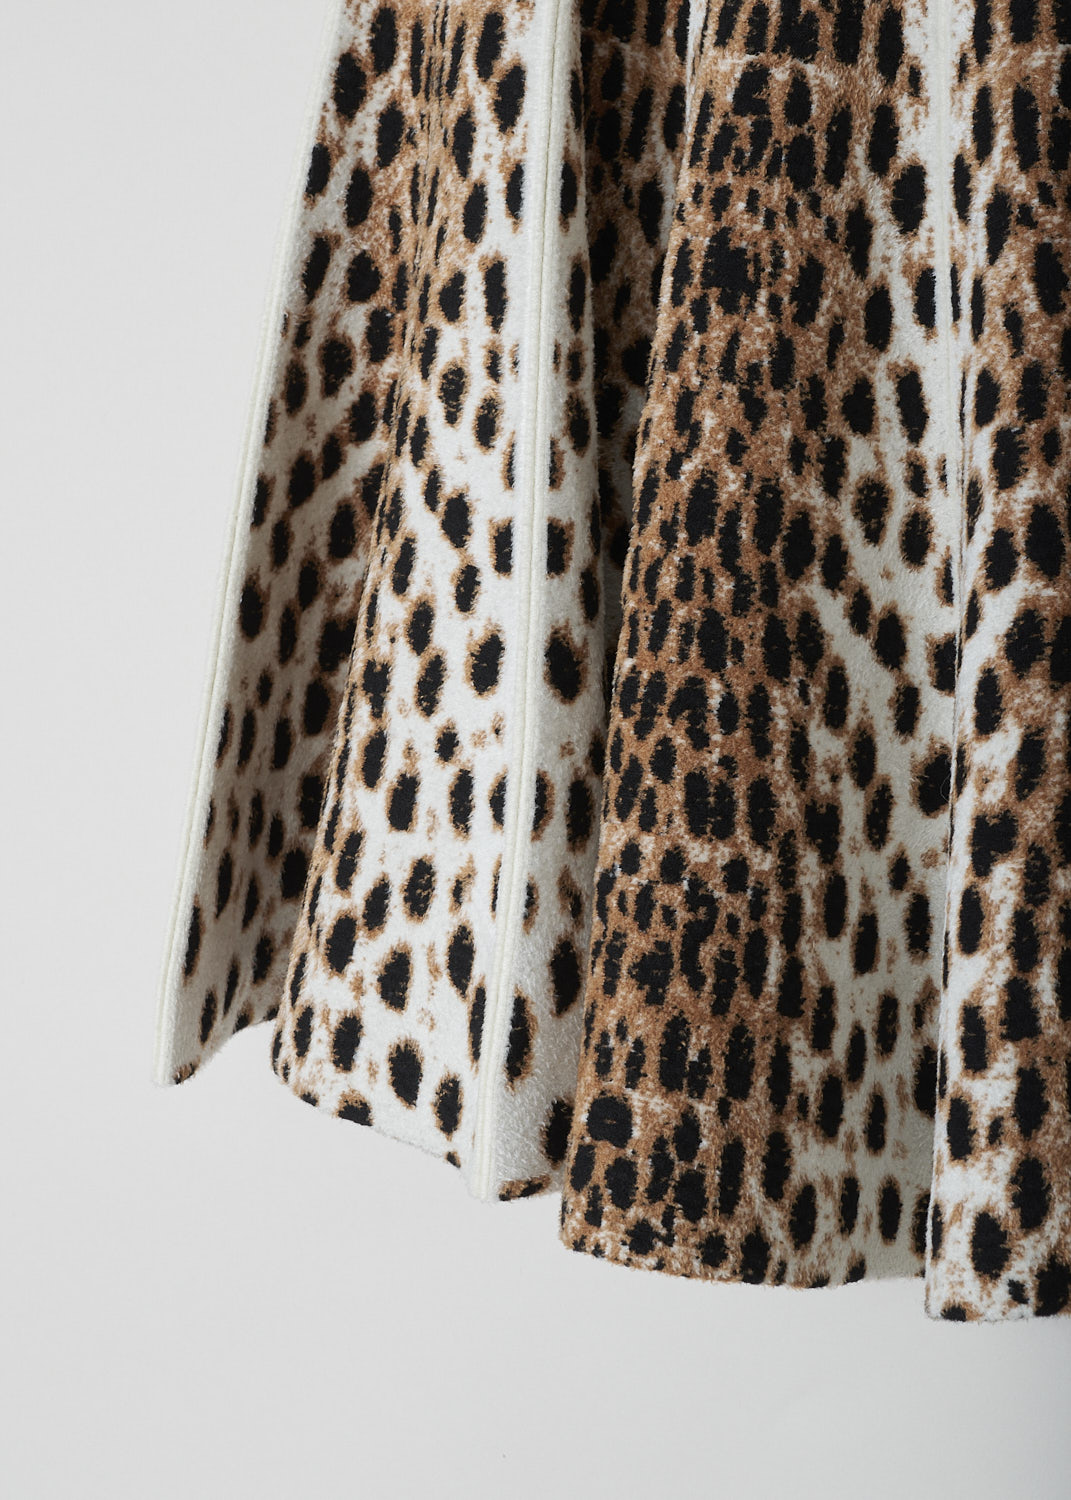 ALAÃA, LEOPARD-PRINT PLEATED BELL SKIRT, 8H9JD95CM435_JUPE_GUEPARD, Beige, Print, Detail, This short pleated leopard-print skirt has a paneled look. A concealed zipper in the back functions as the closure option. 
